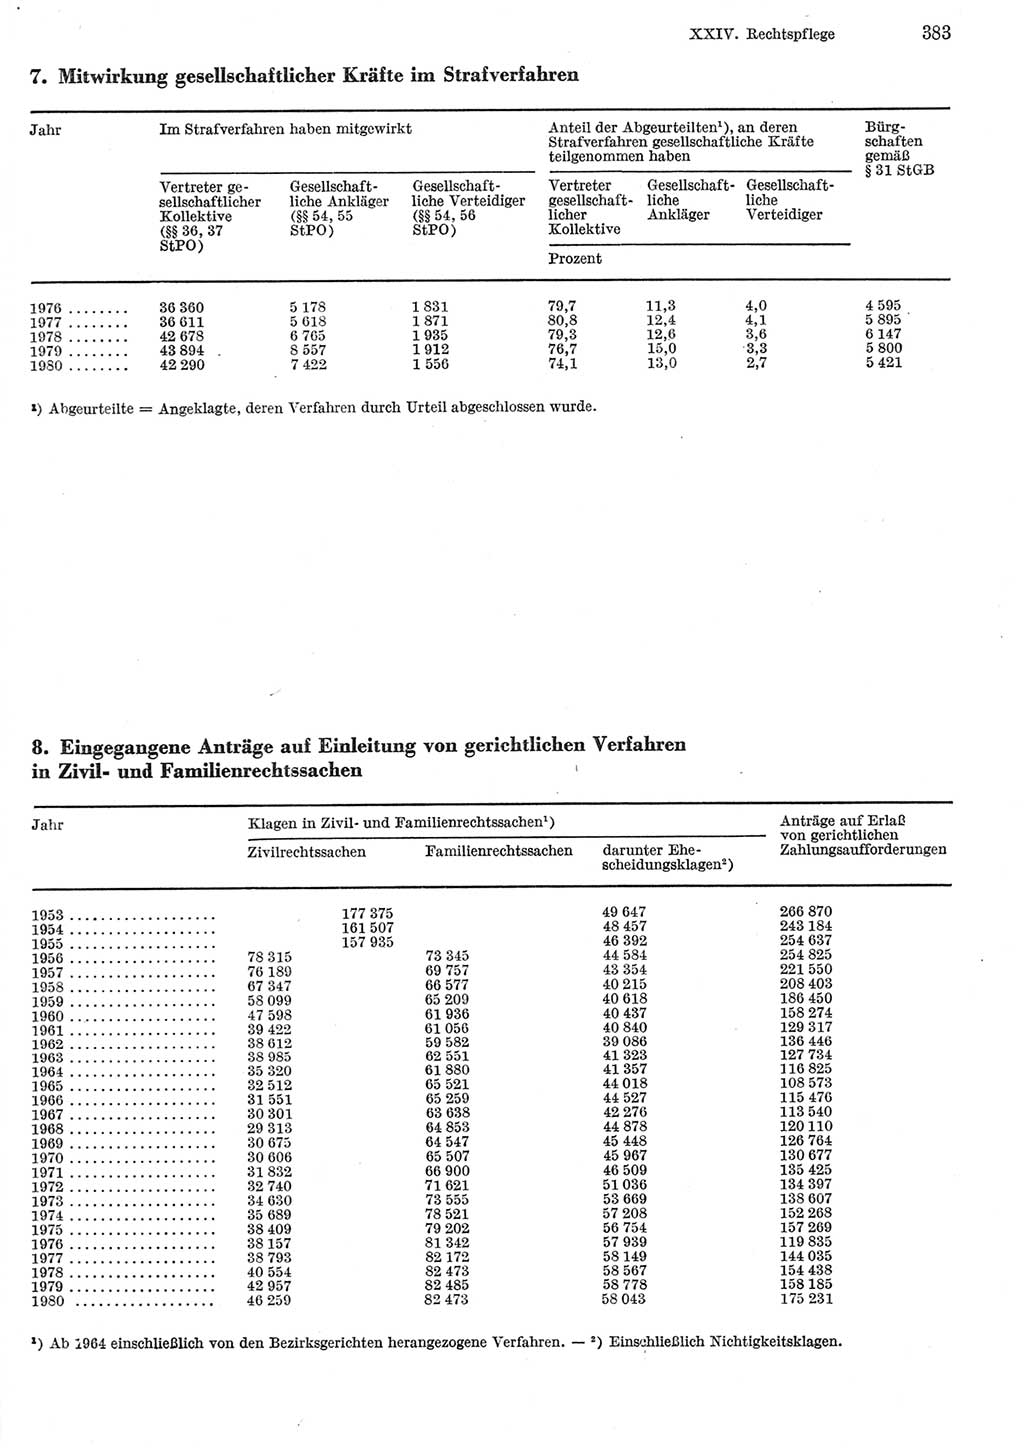 Statistisches Jahrbuch der Deutschen Demokratischen Republik (DDR) 1981, Seite 383 (Stat. Jb. DDR 1981, S. 383)